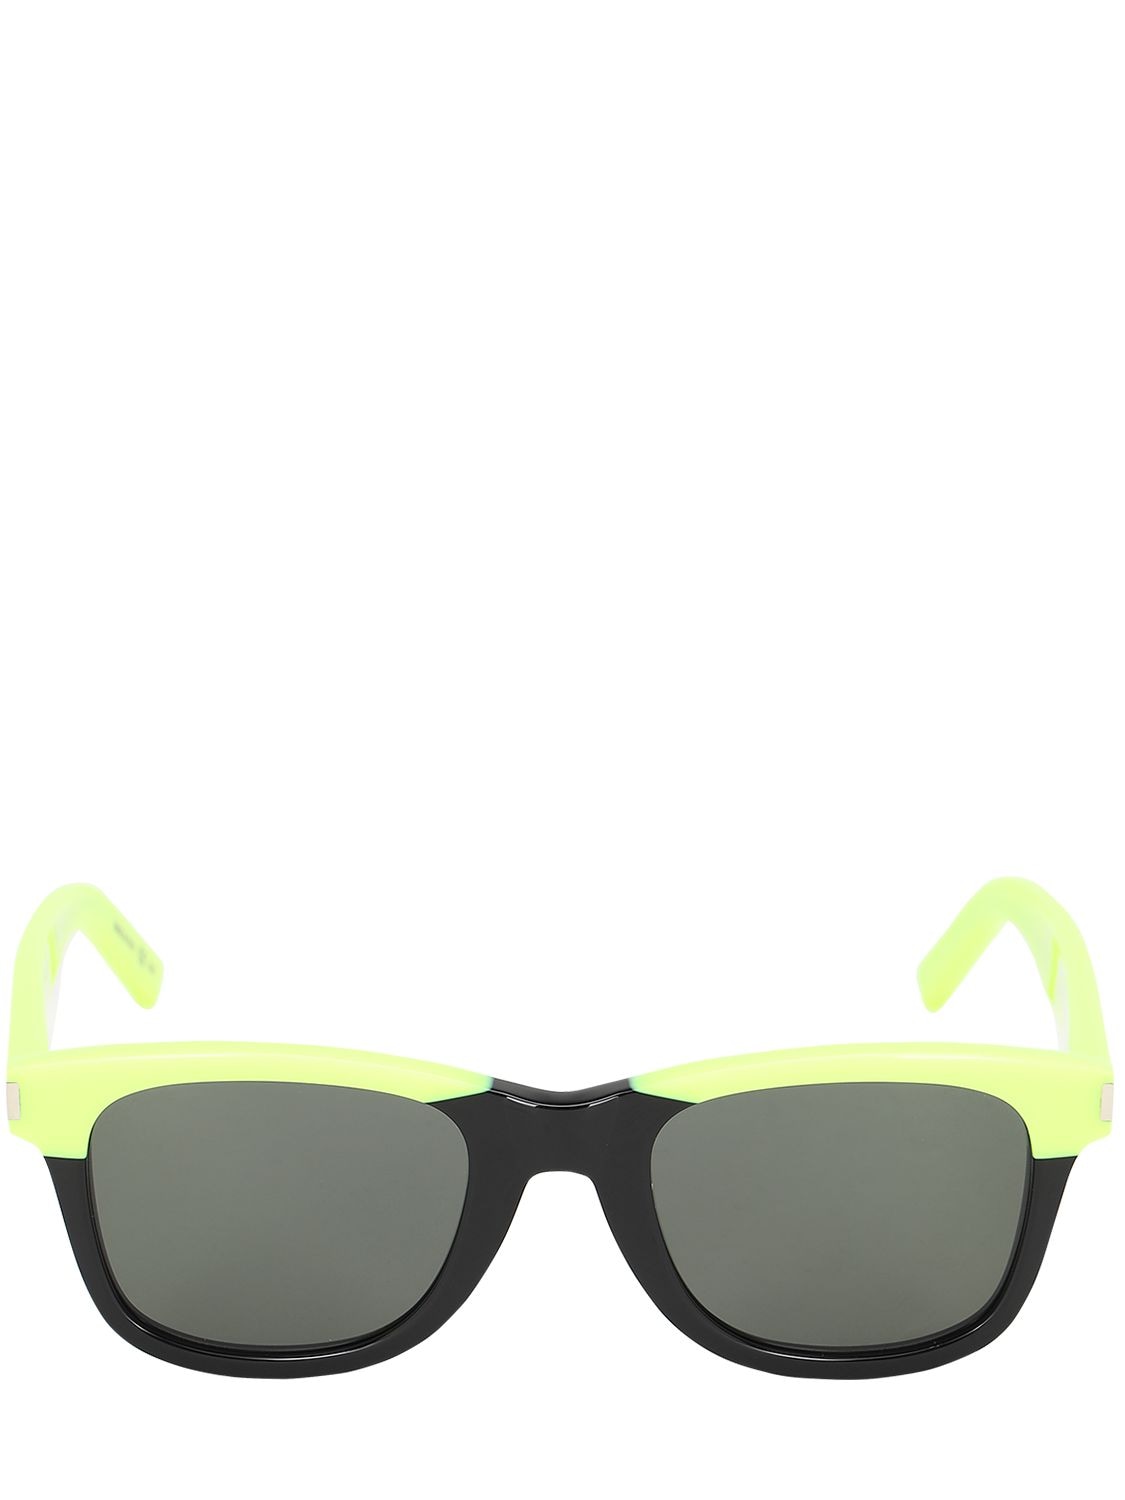 Saint Laurent Squared Neon Acetate Sunglasses In Yellow